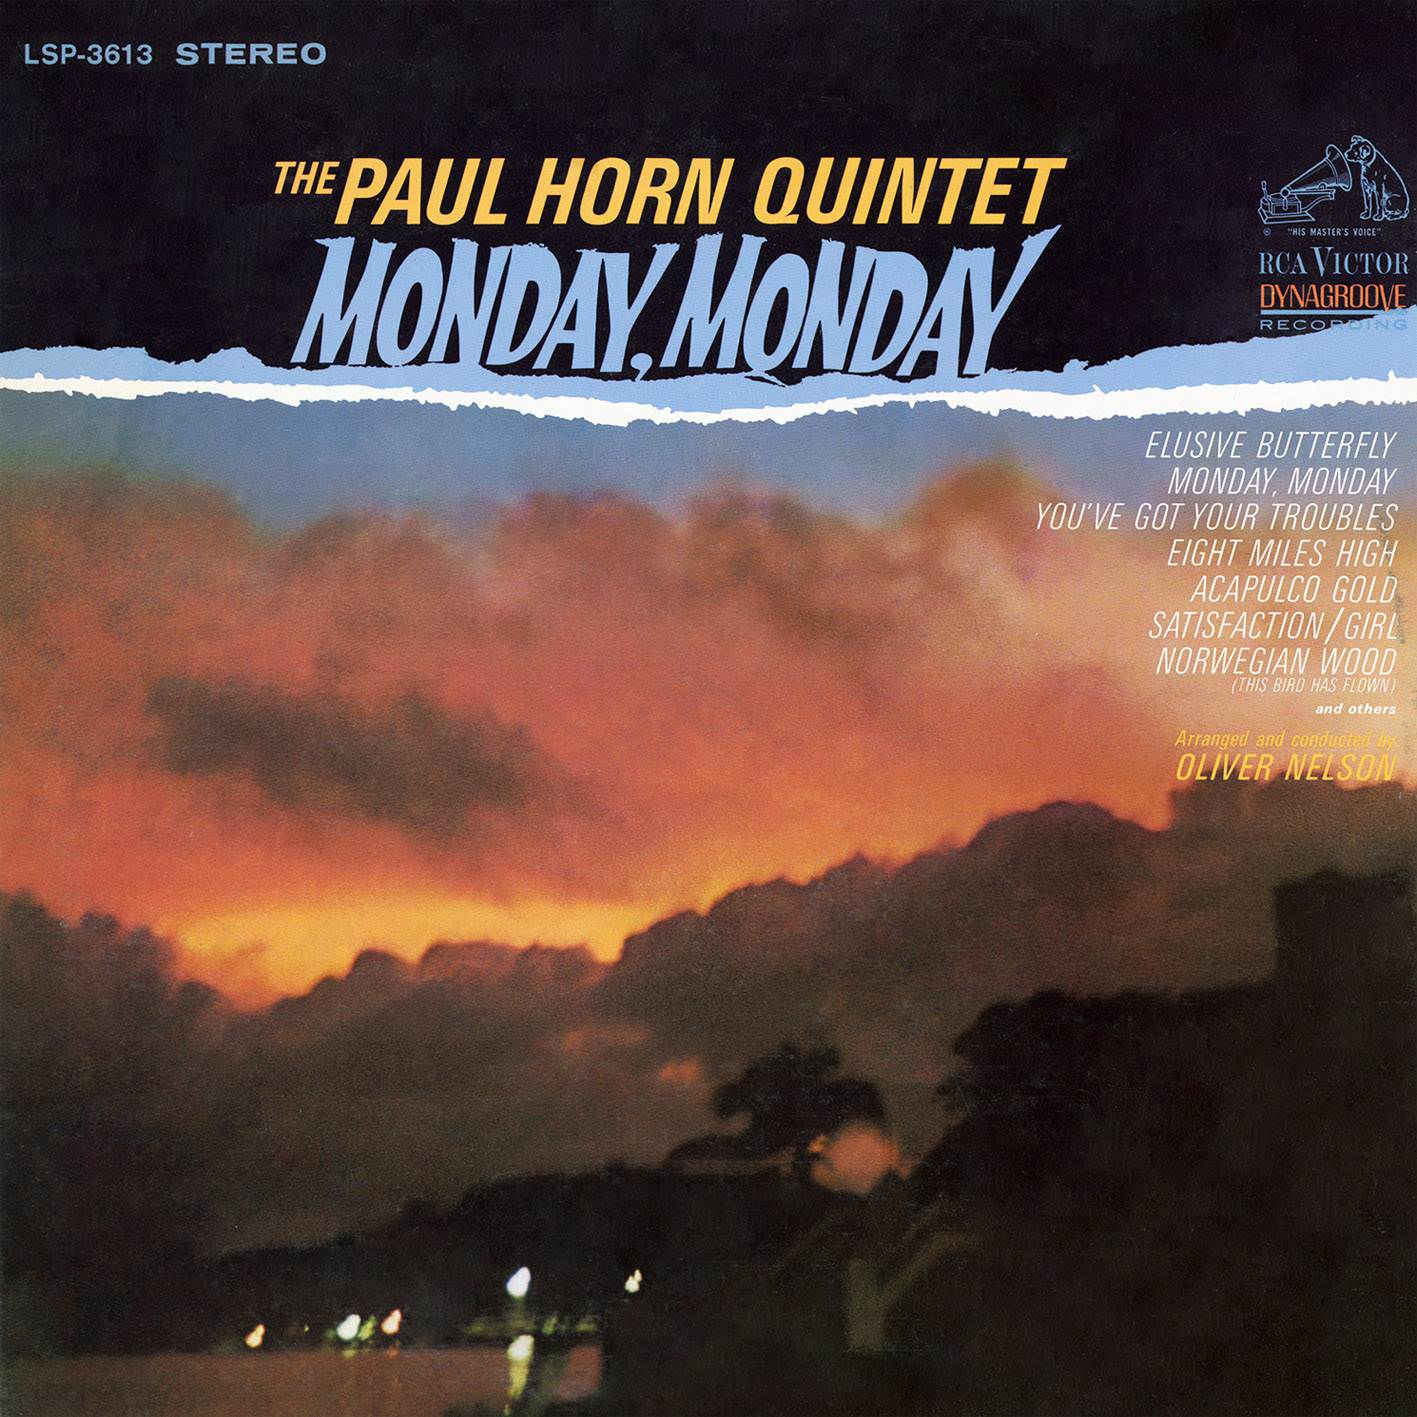 The Paul Horn Quintet - Monday, Monday (1966/2016) [AcousticSounds FLAC 24bit/192kHz]